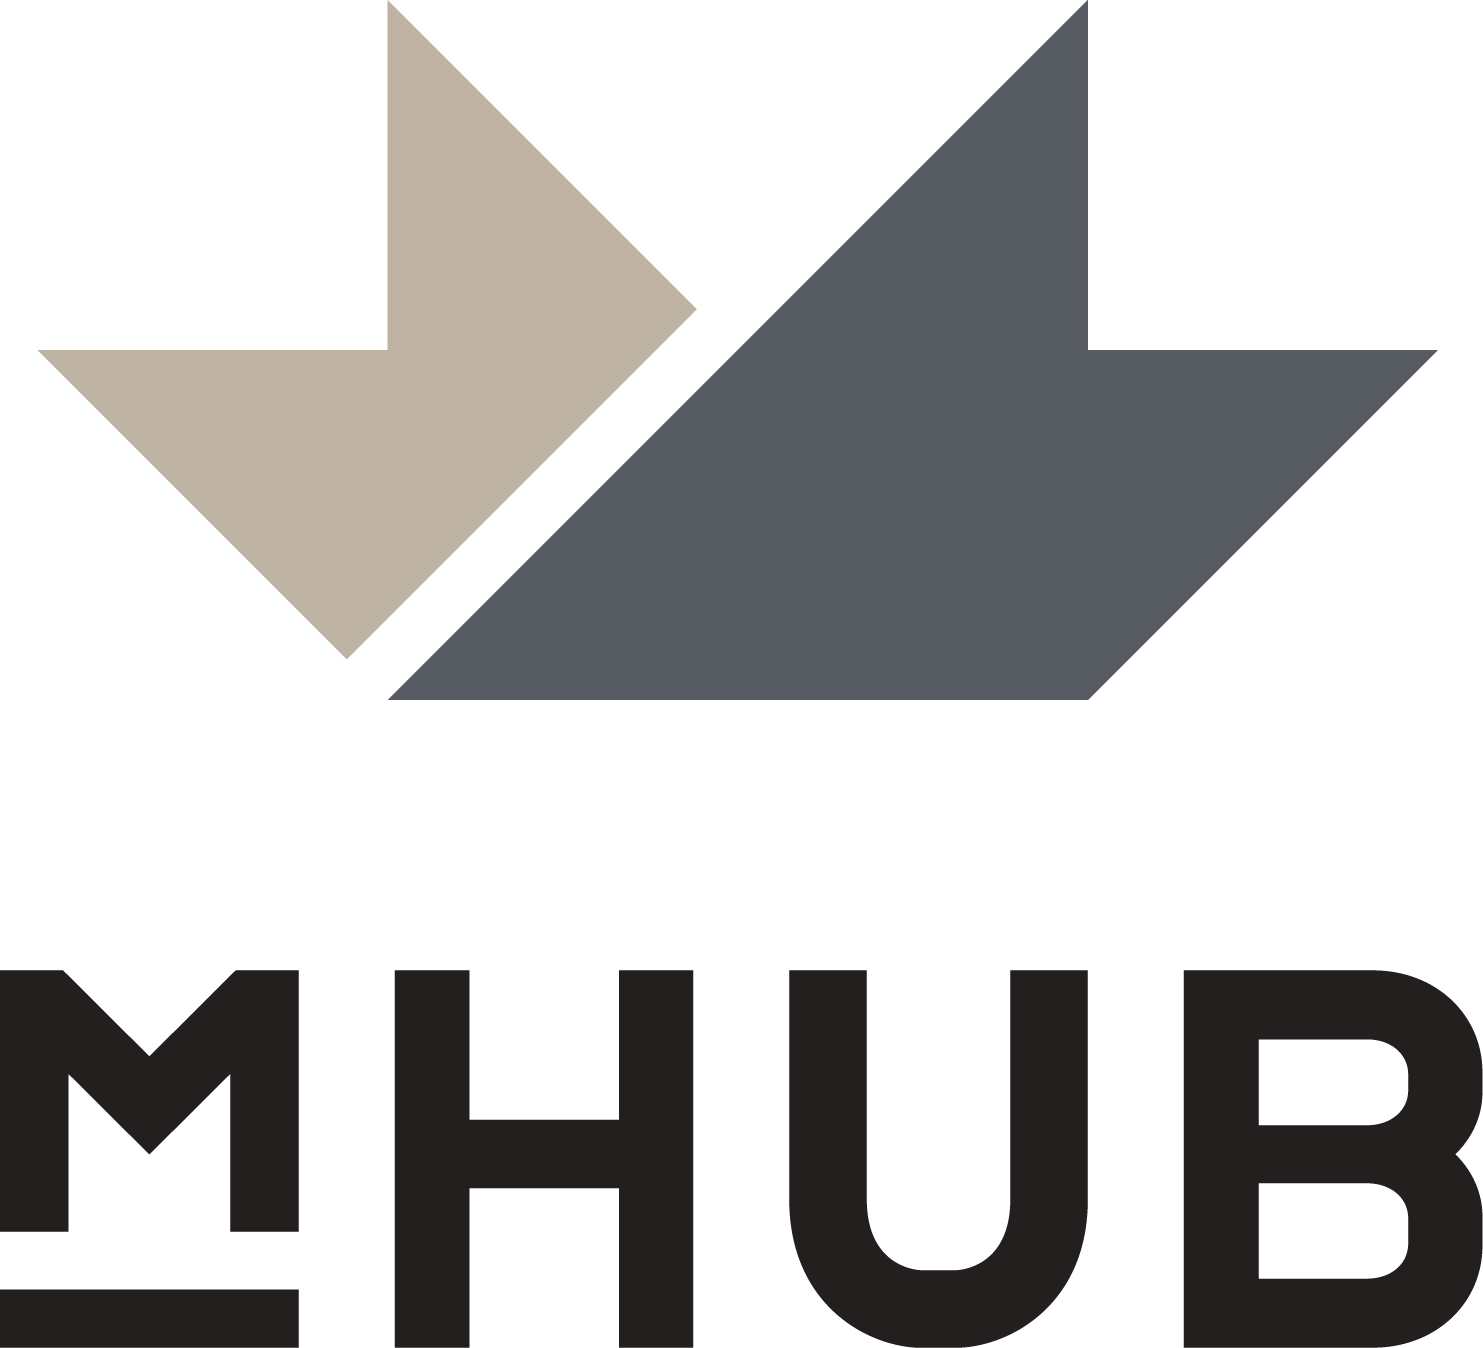 mHUB logo